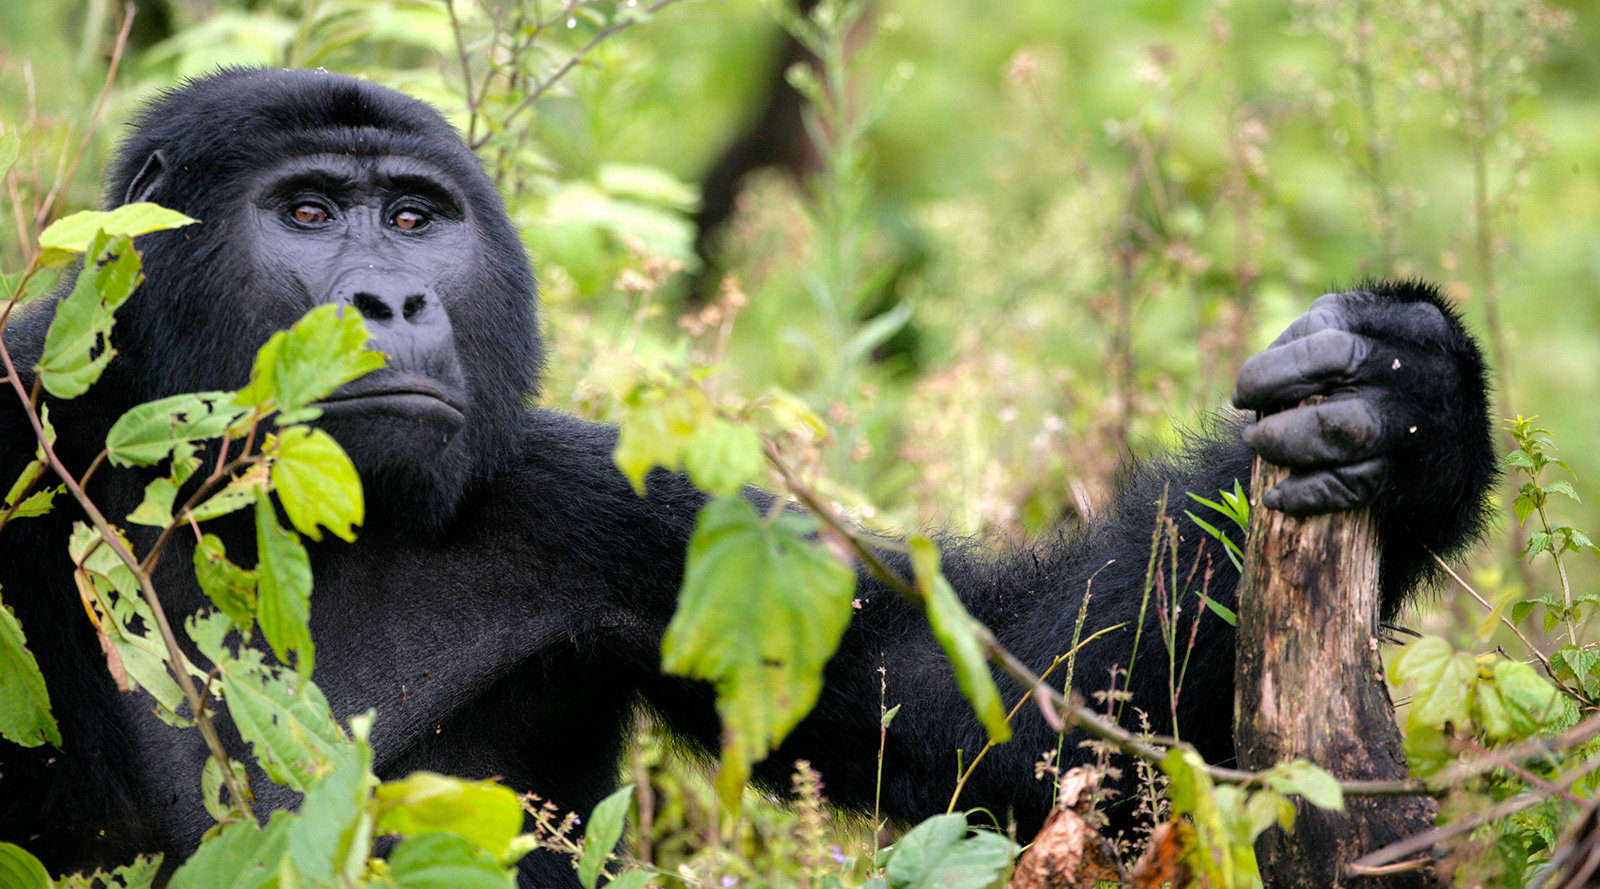 © Benedetta Mazzini | Uganda, Bwindi National Park